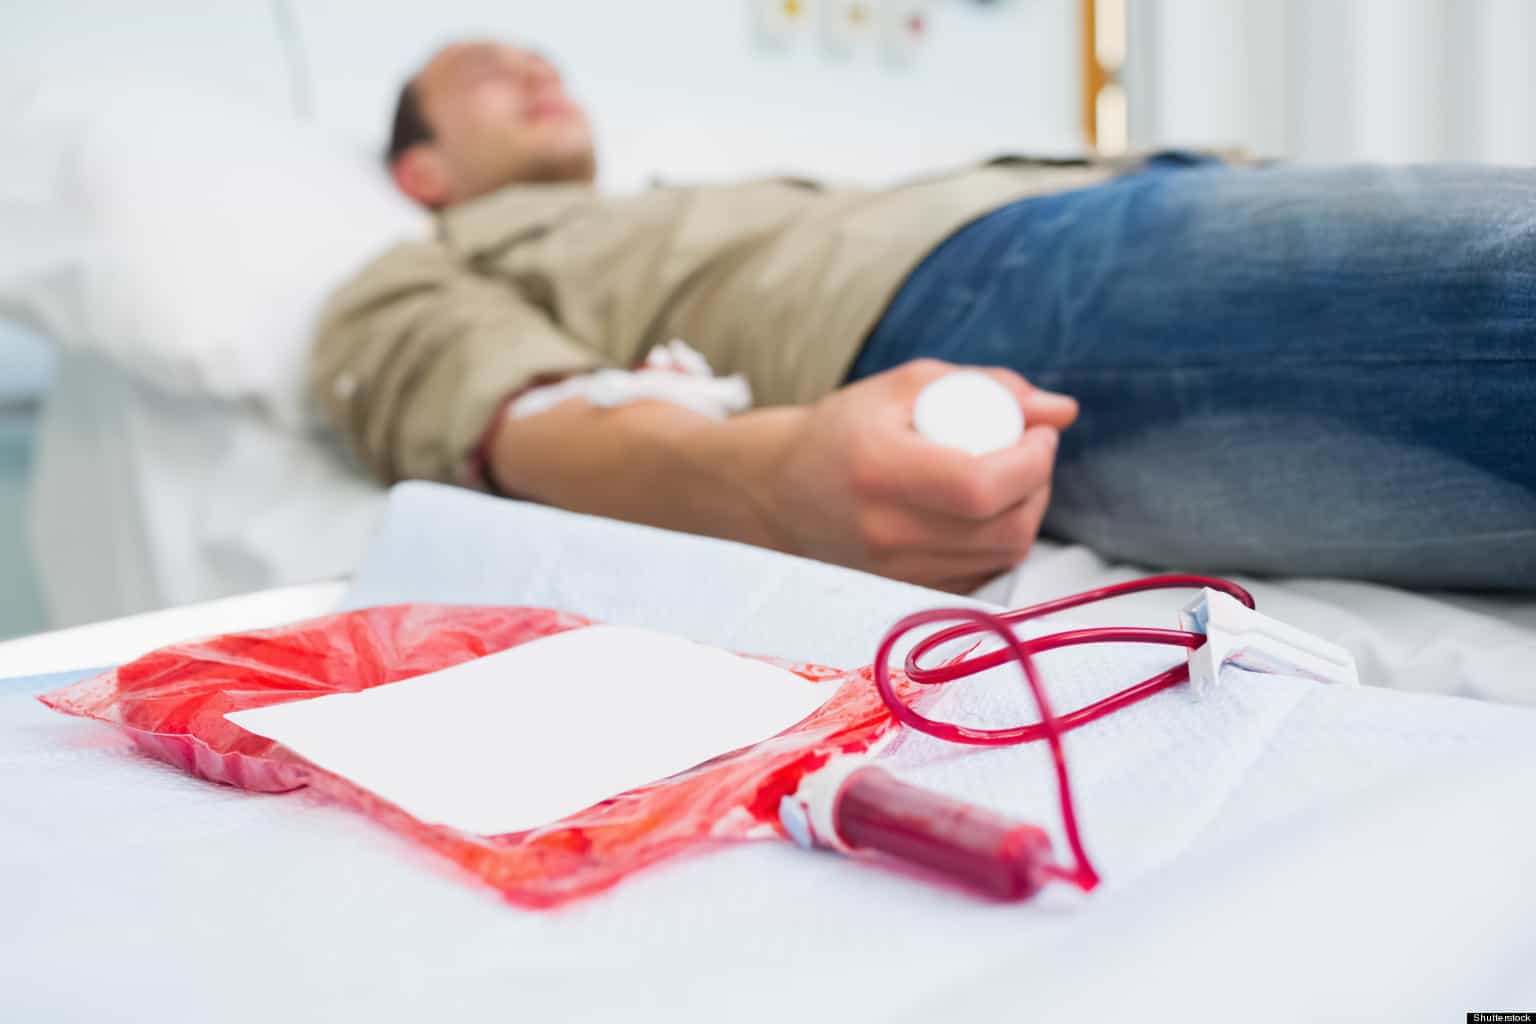 Le persone che hanno il sangue denso non sono raccomandate per donare il sangue, questo è il motivo